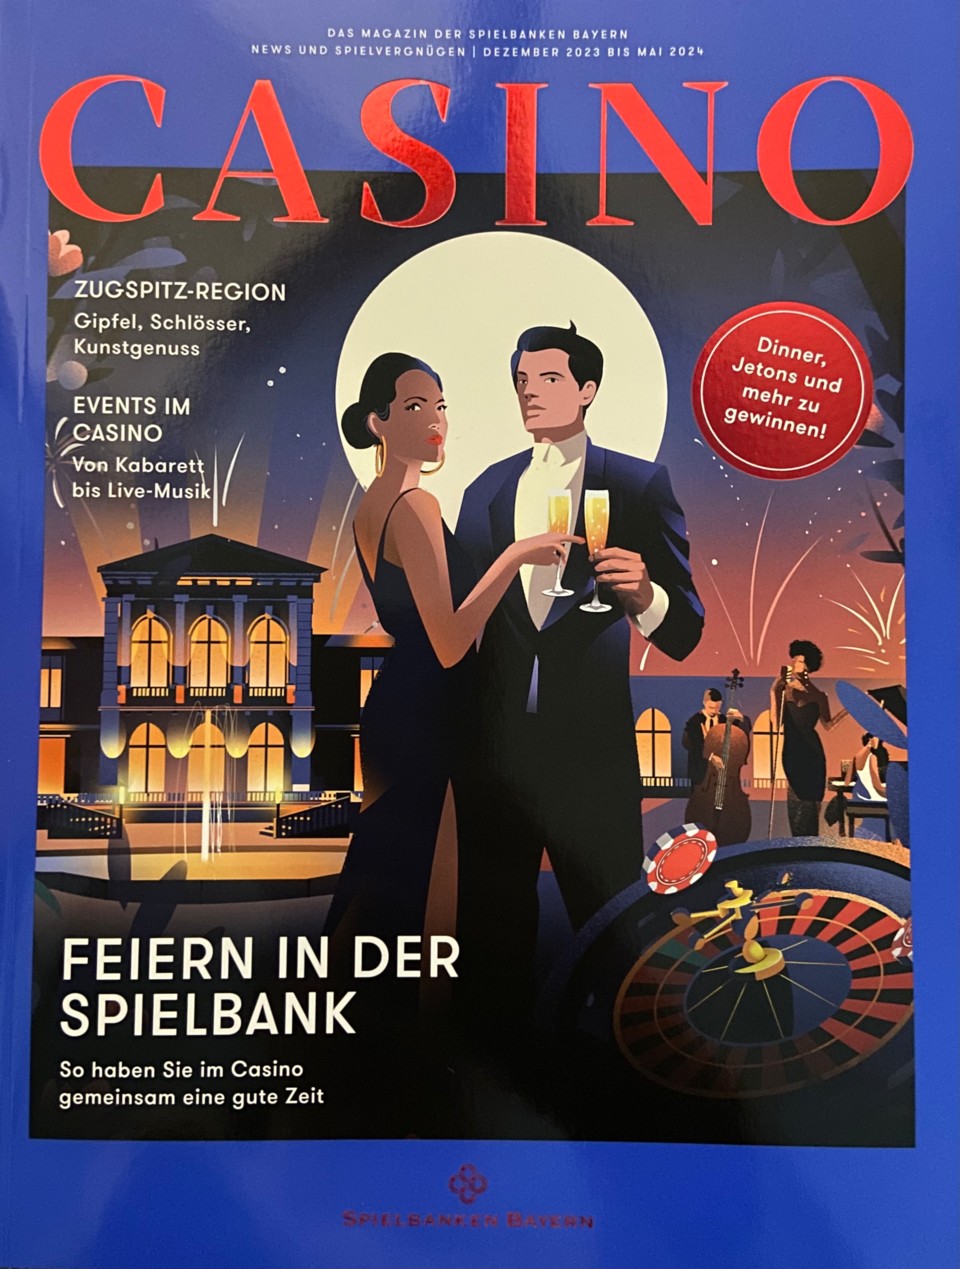 Das CASINO Magazin informiet zwei Mal im Jahr über Neues aus der Welt der Bayerischen Spielbanken.